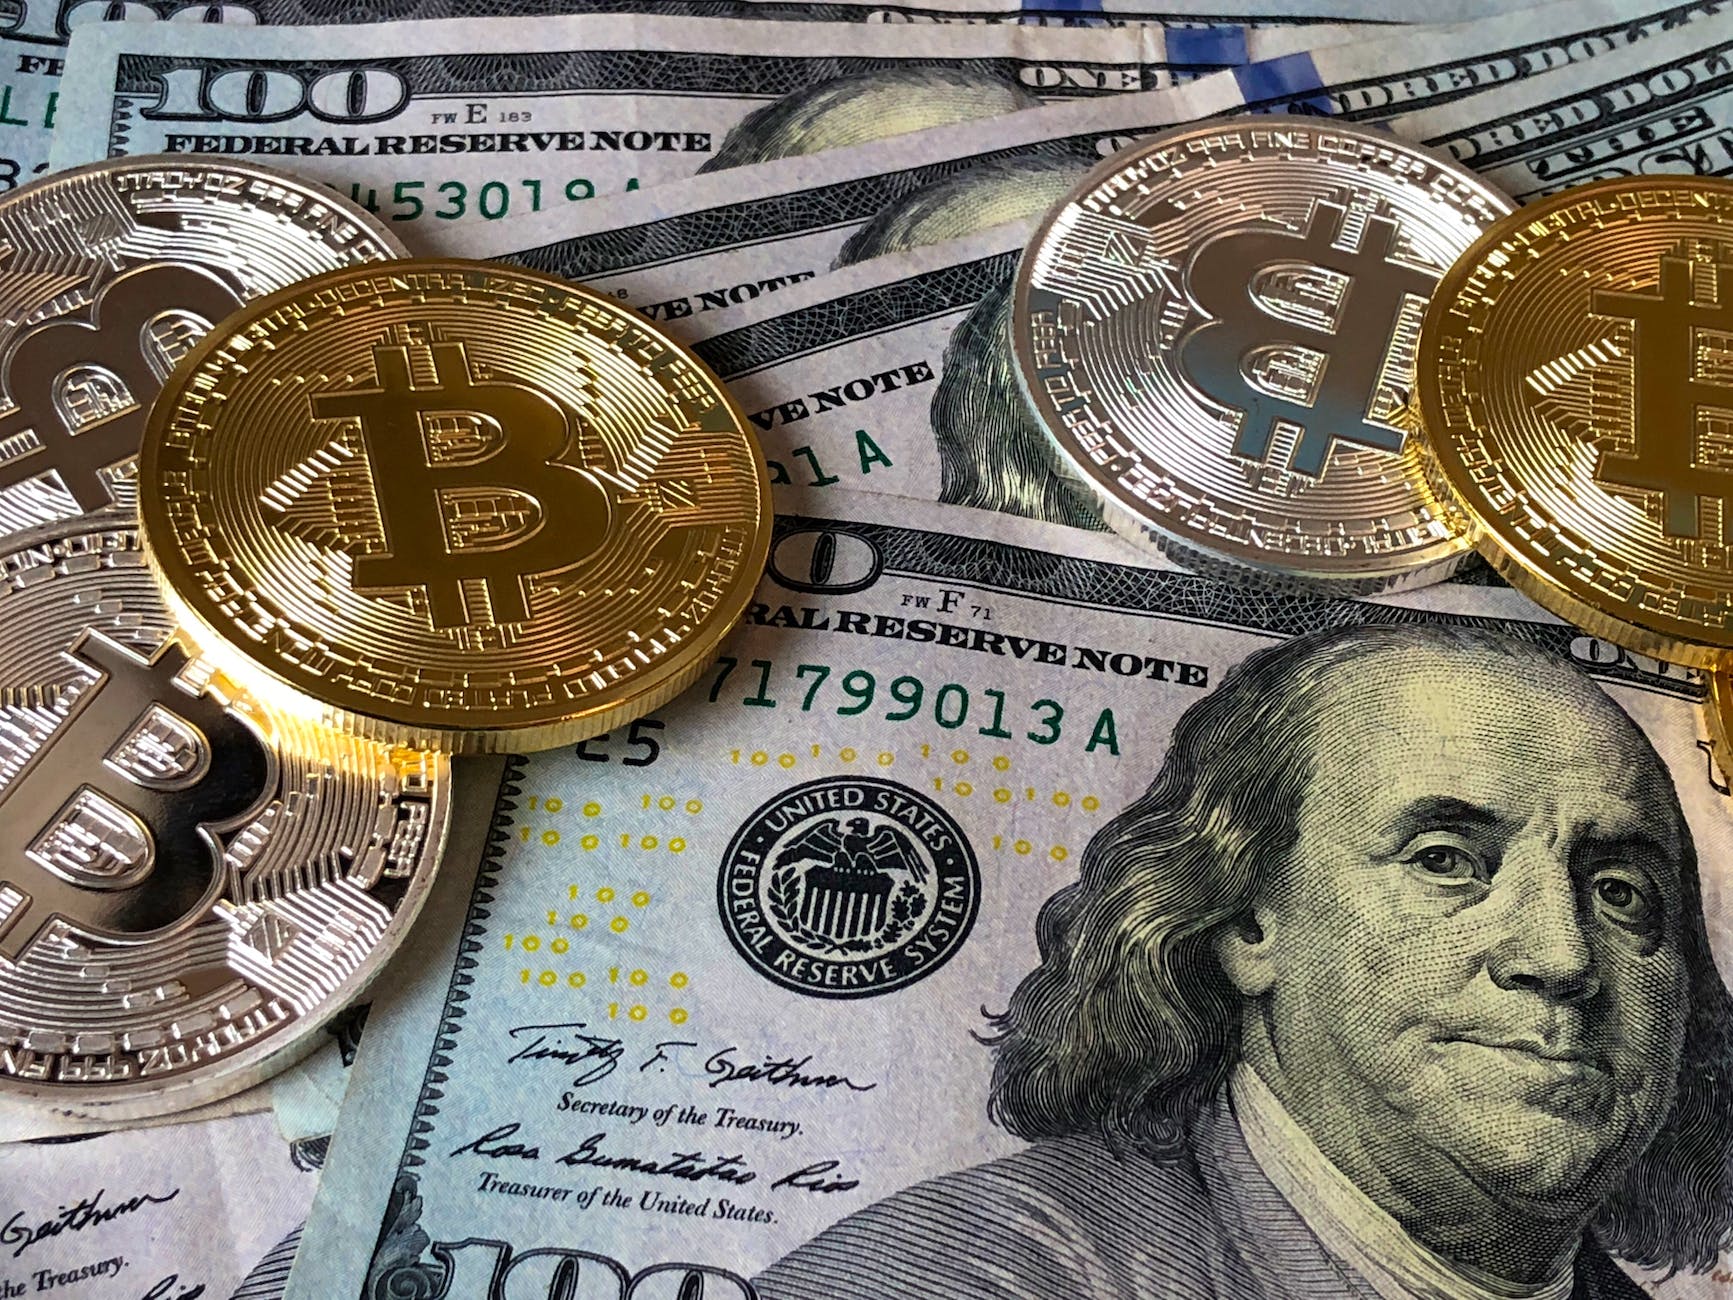 Cryptomonnaie, Bitcoin monnaie alternative ou actif spéculatif ?